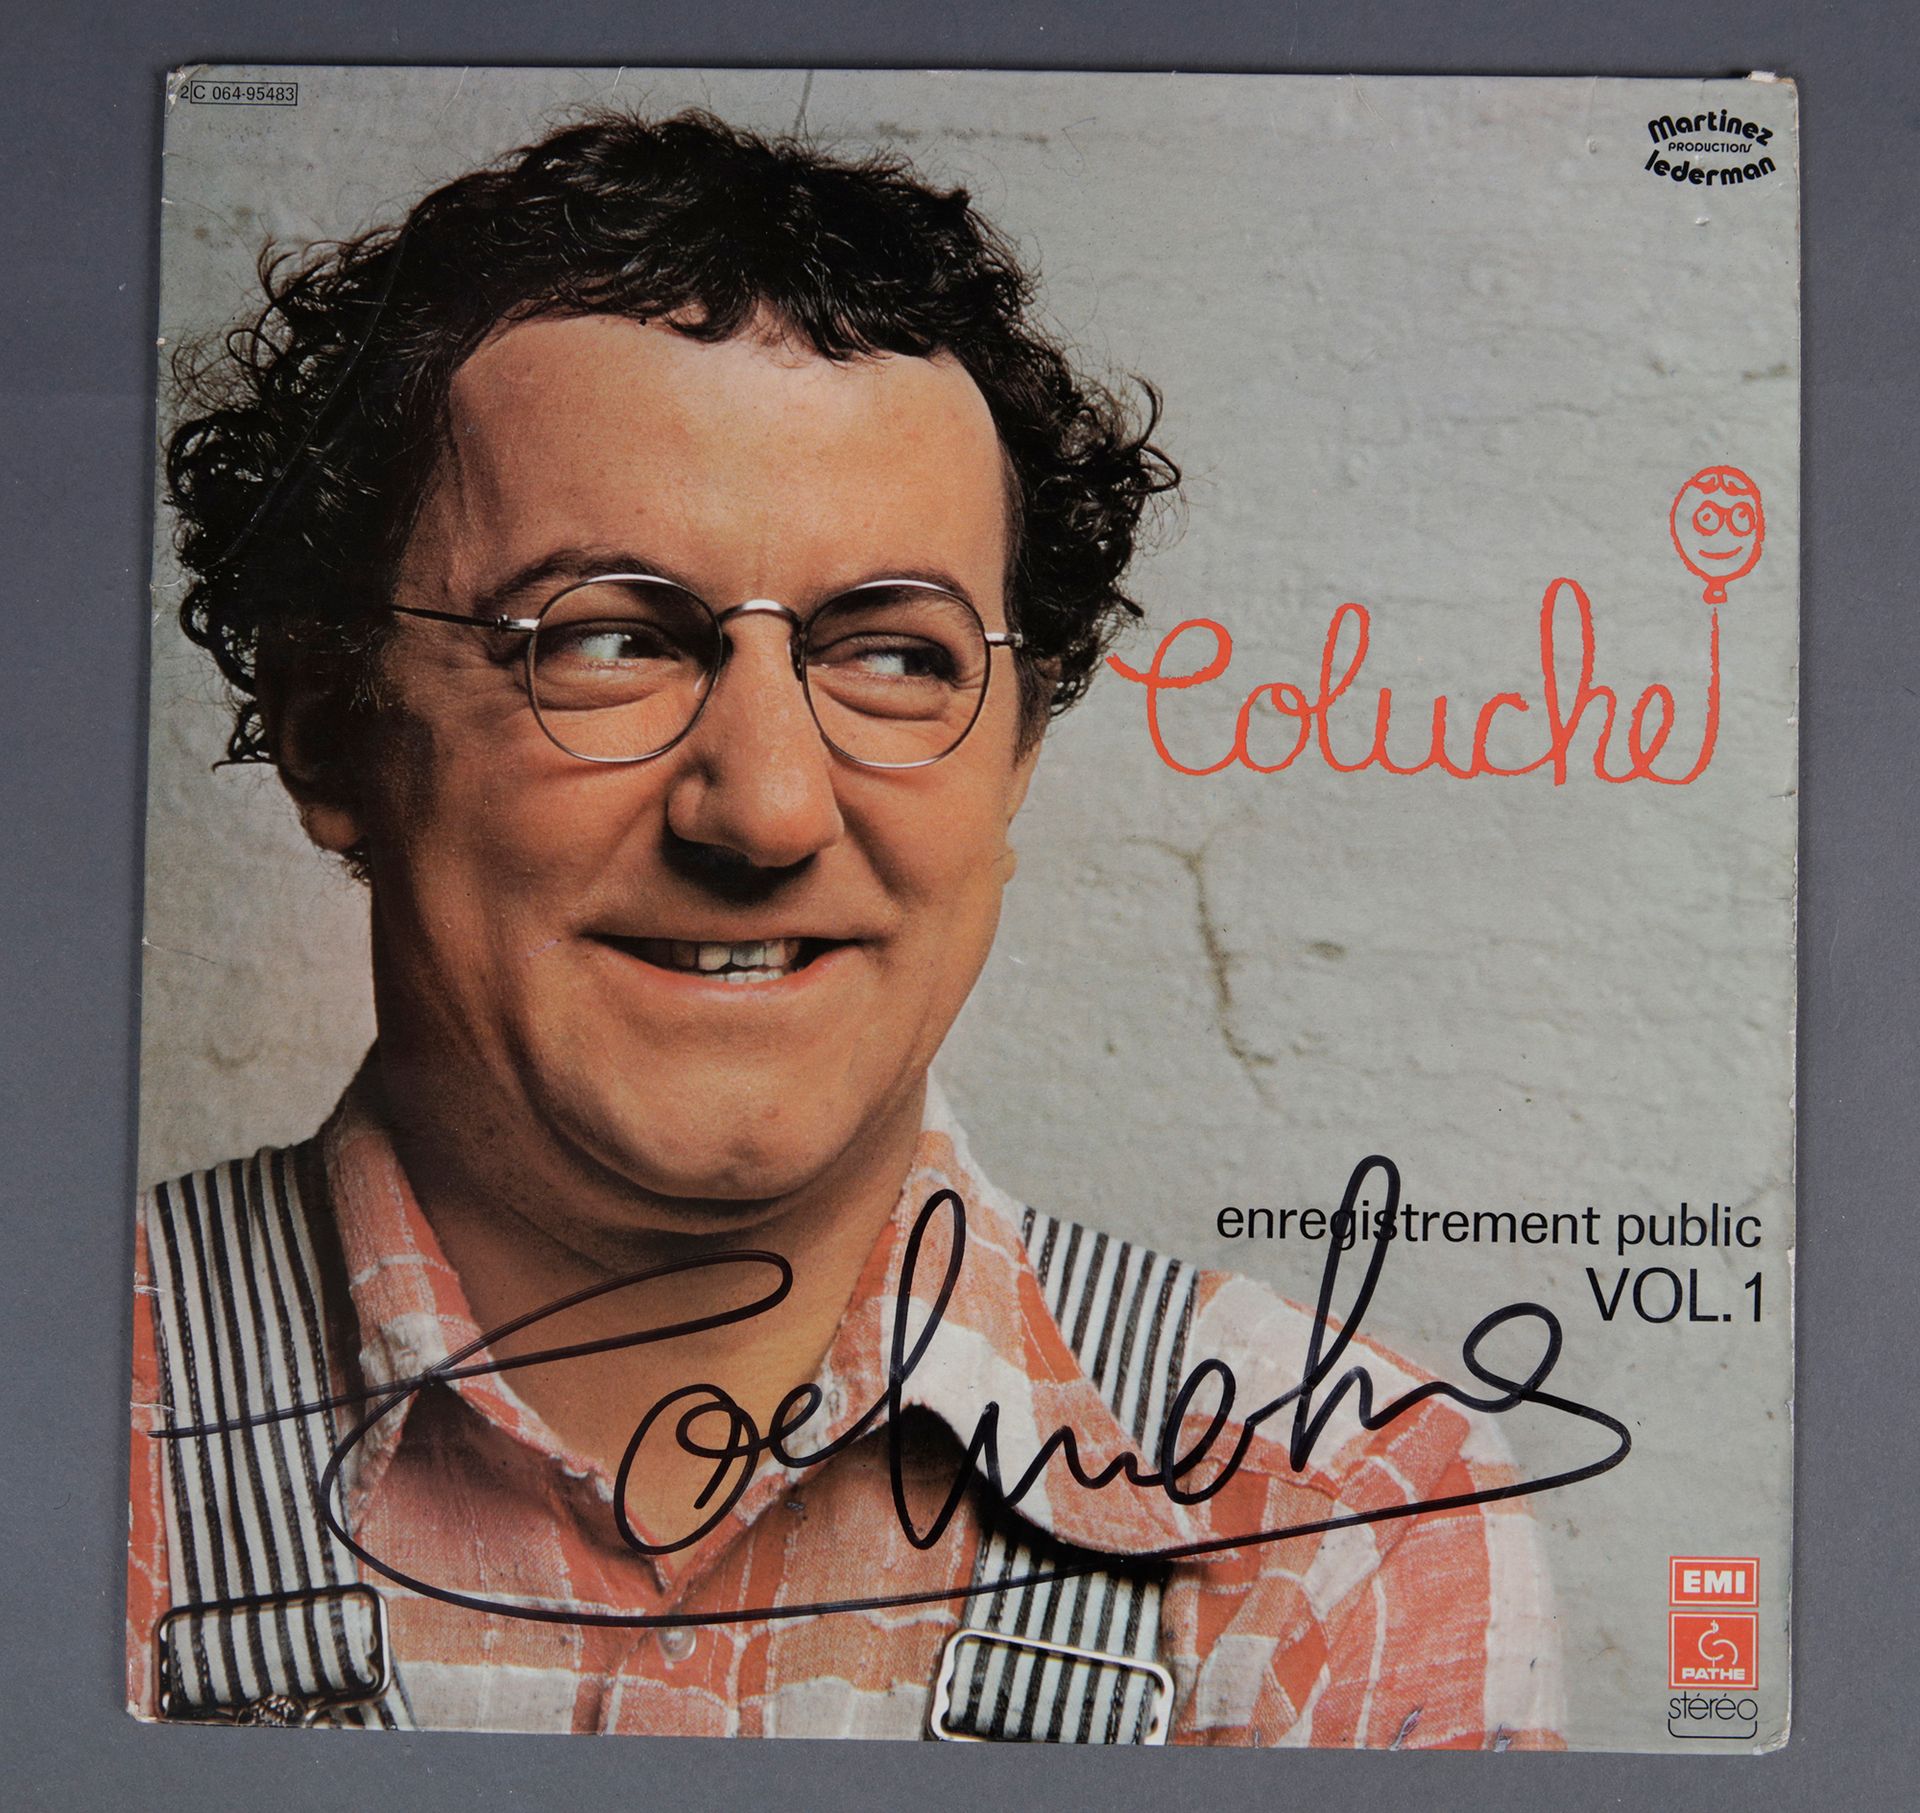 Null COLUCHE (1944/1986)
1 33 rpm record "Coluche - Public recording
Volume 1", &hellip;